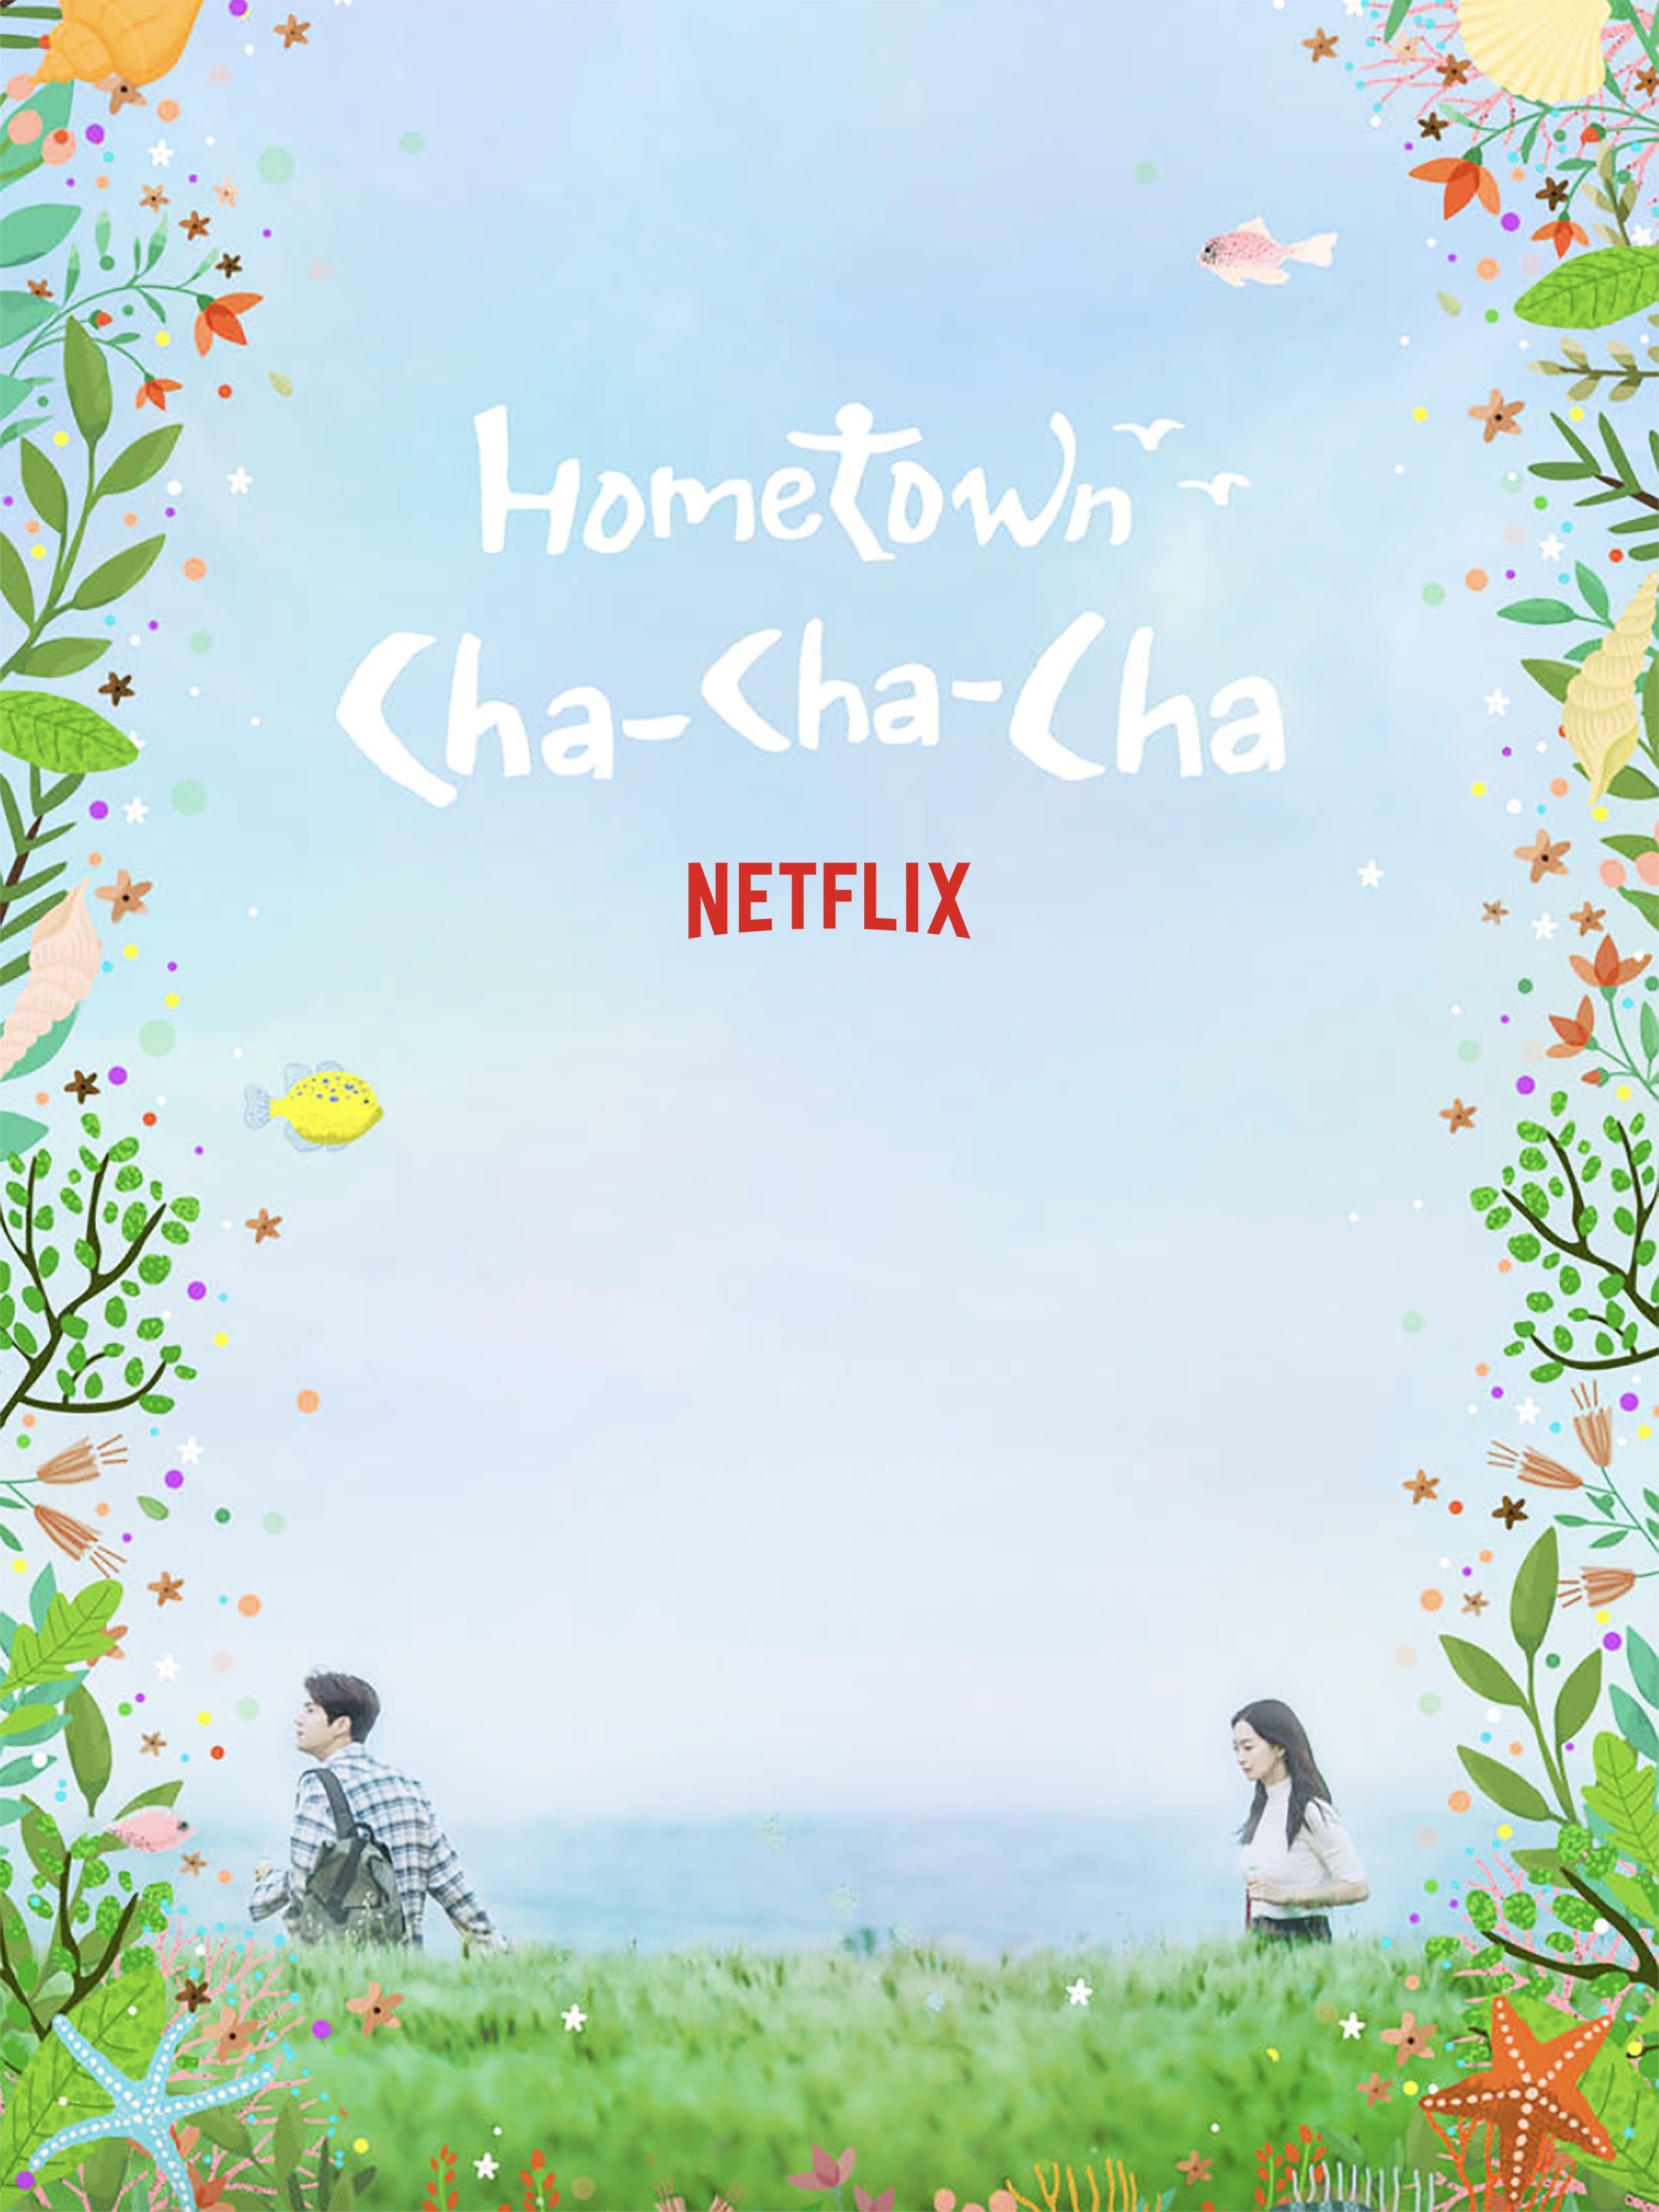 Cha-cha hometown